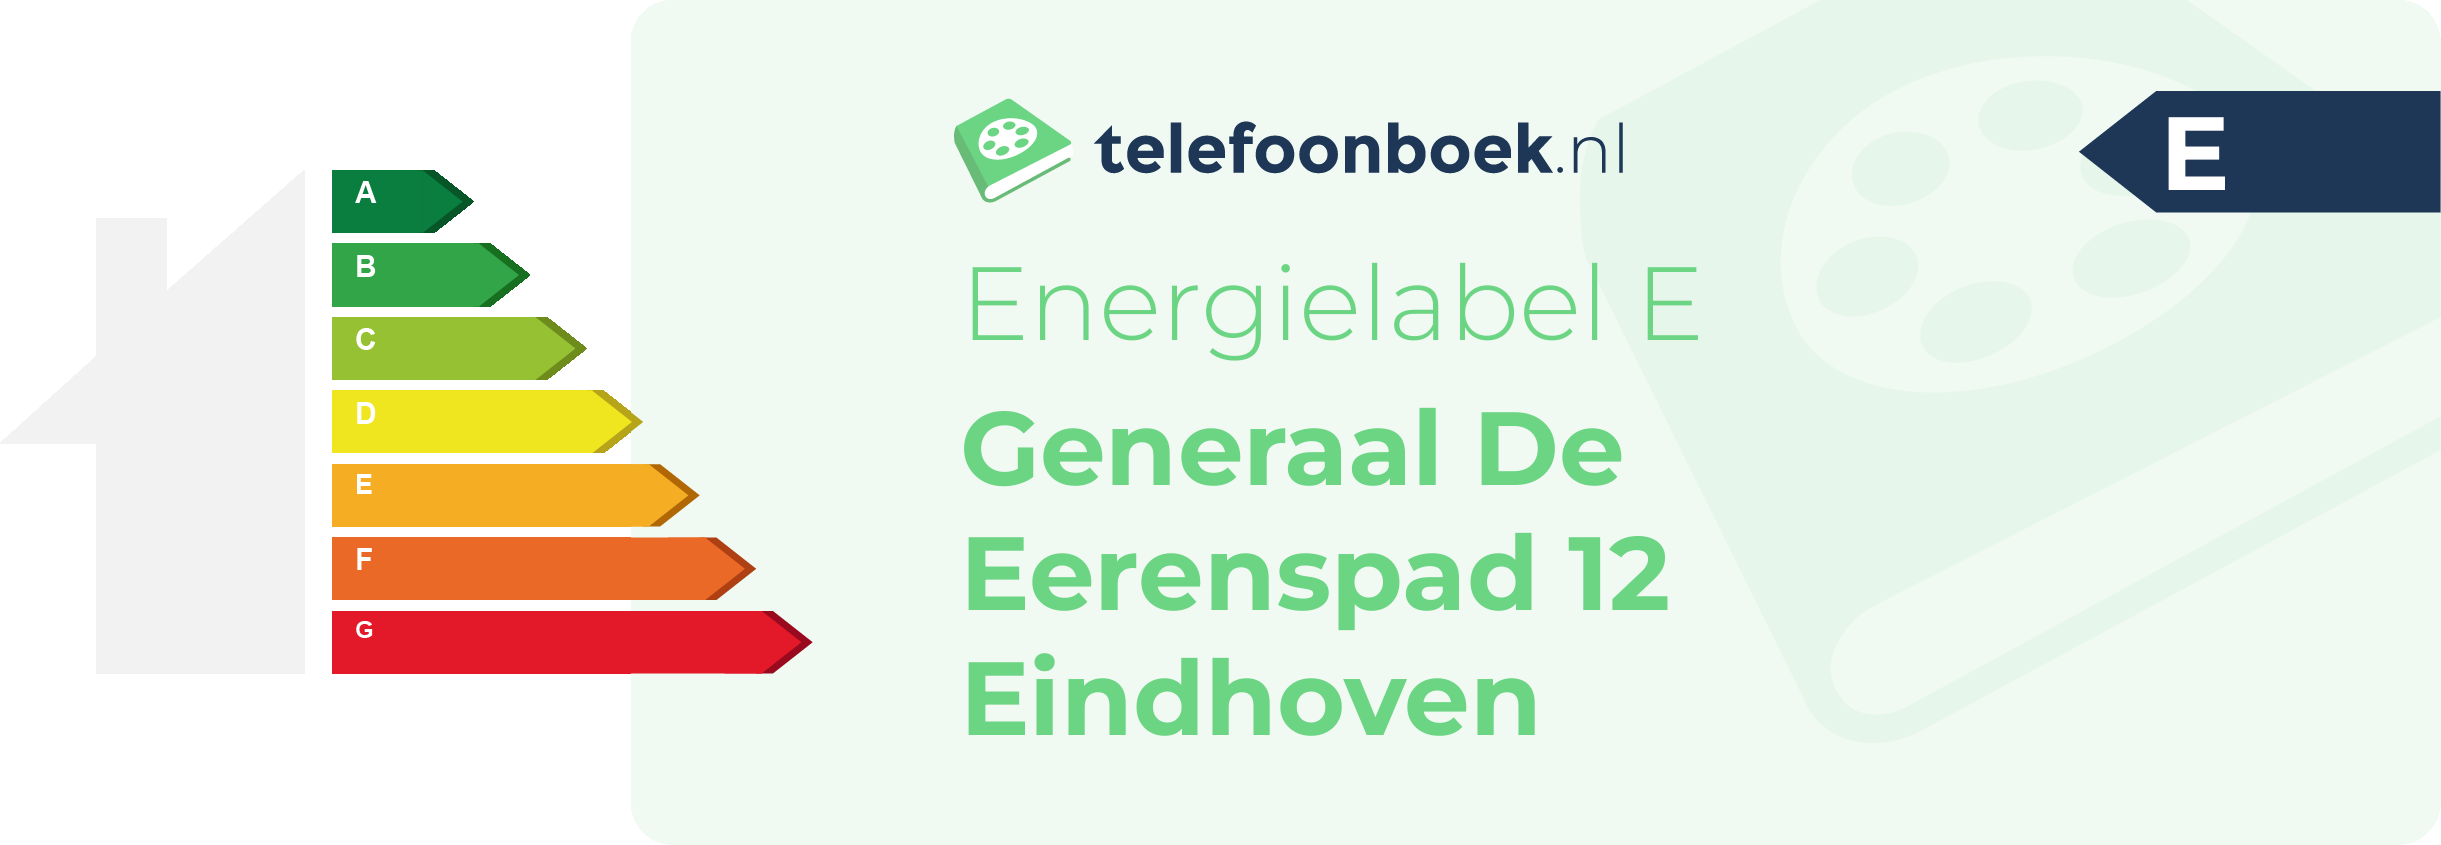 Energielabel Generaal De Eerenspad 12 Eindhoven